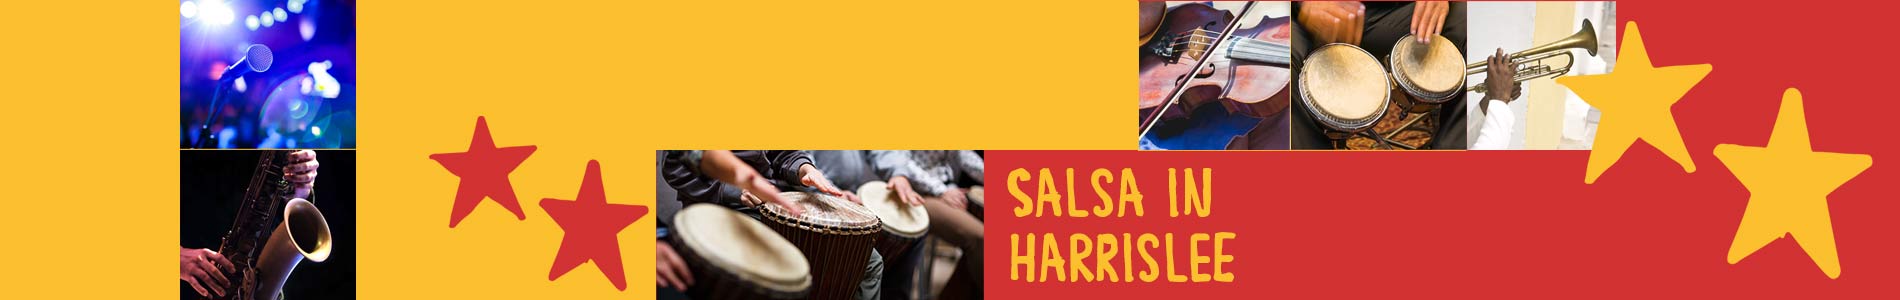 Salsa in Harrislee – Salsa lernen und tanzen, Tanzkurse, Partys, Veranstaltungen